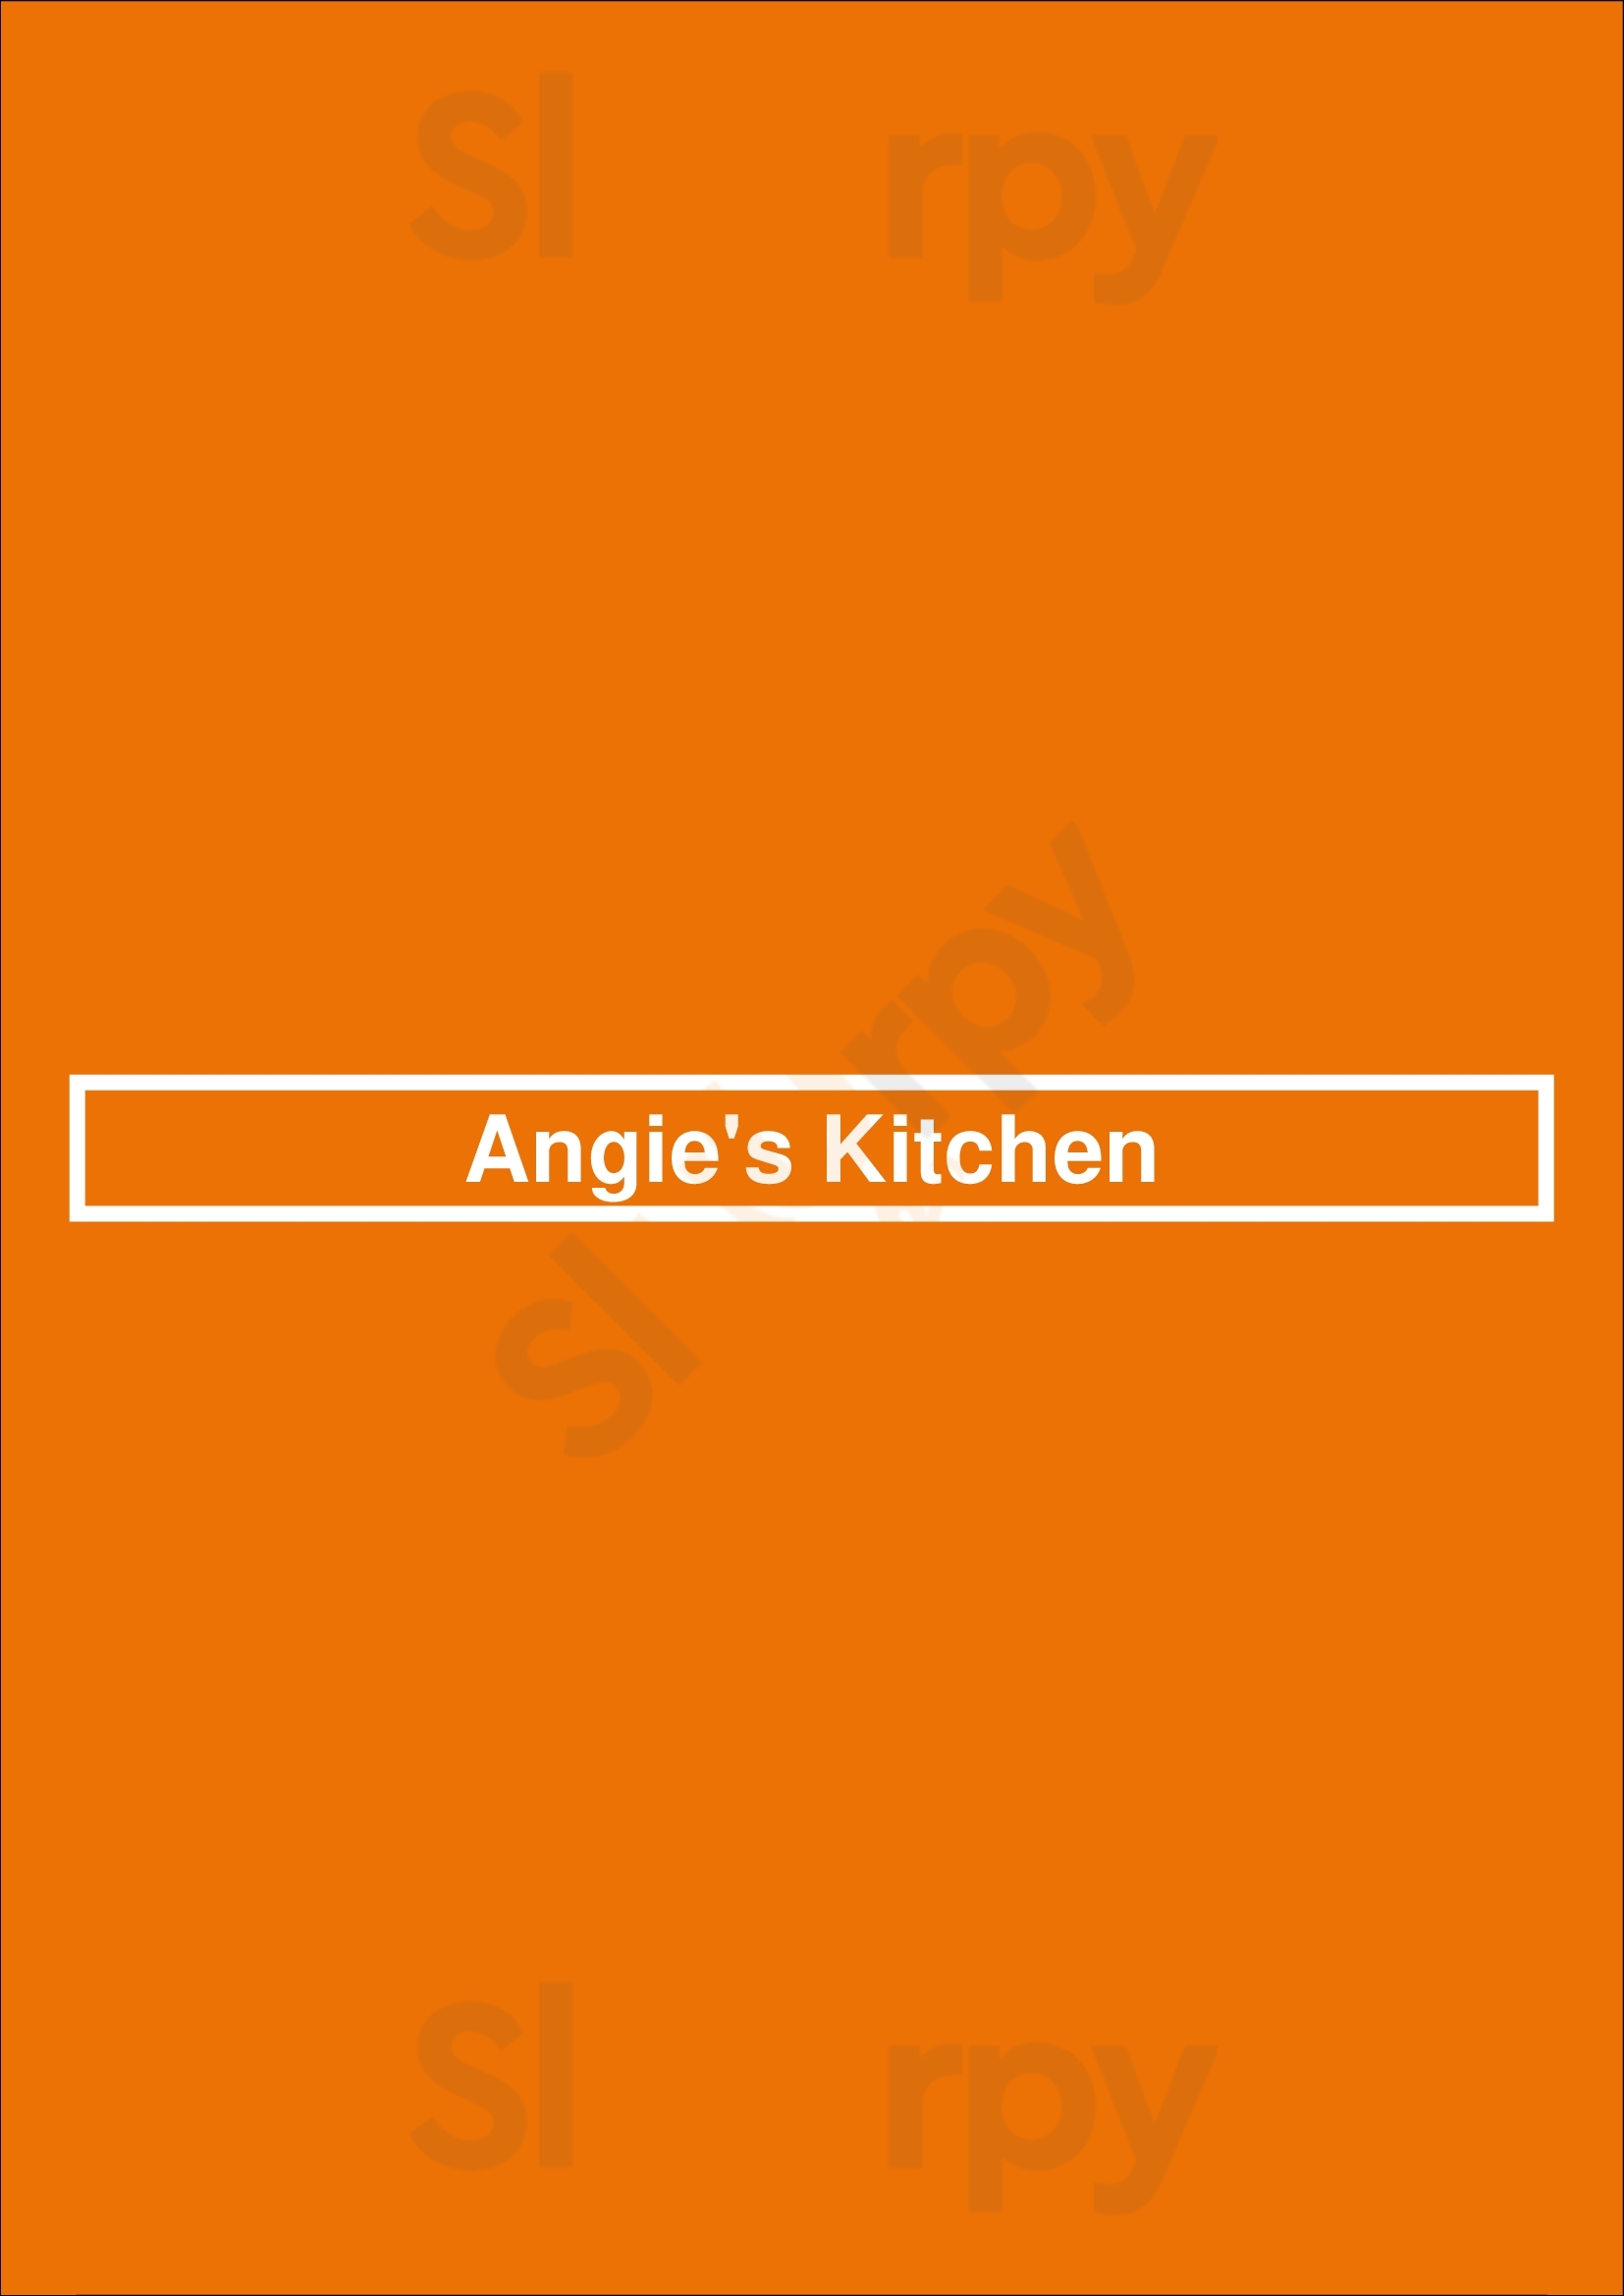 Angie's Kitchen Den Haag Menu - 1